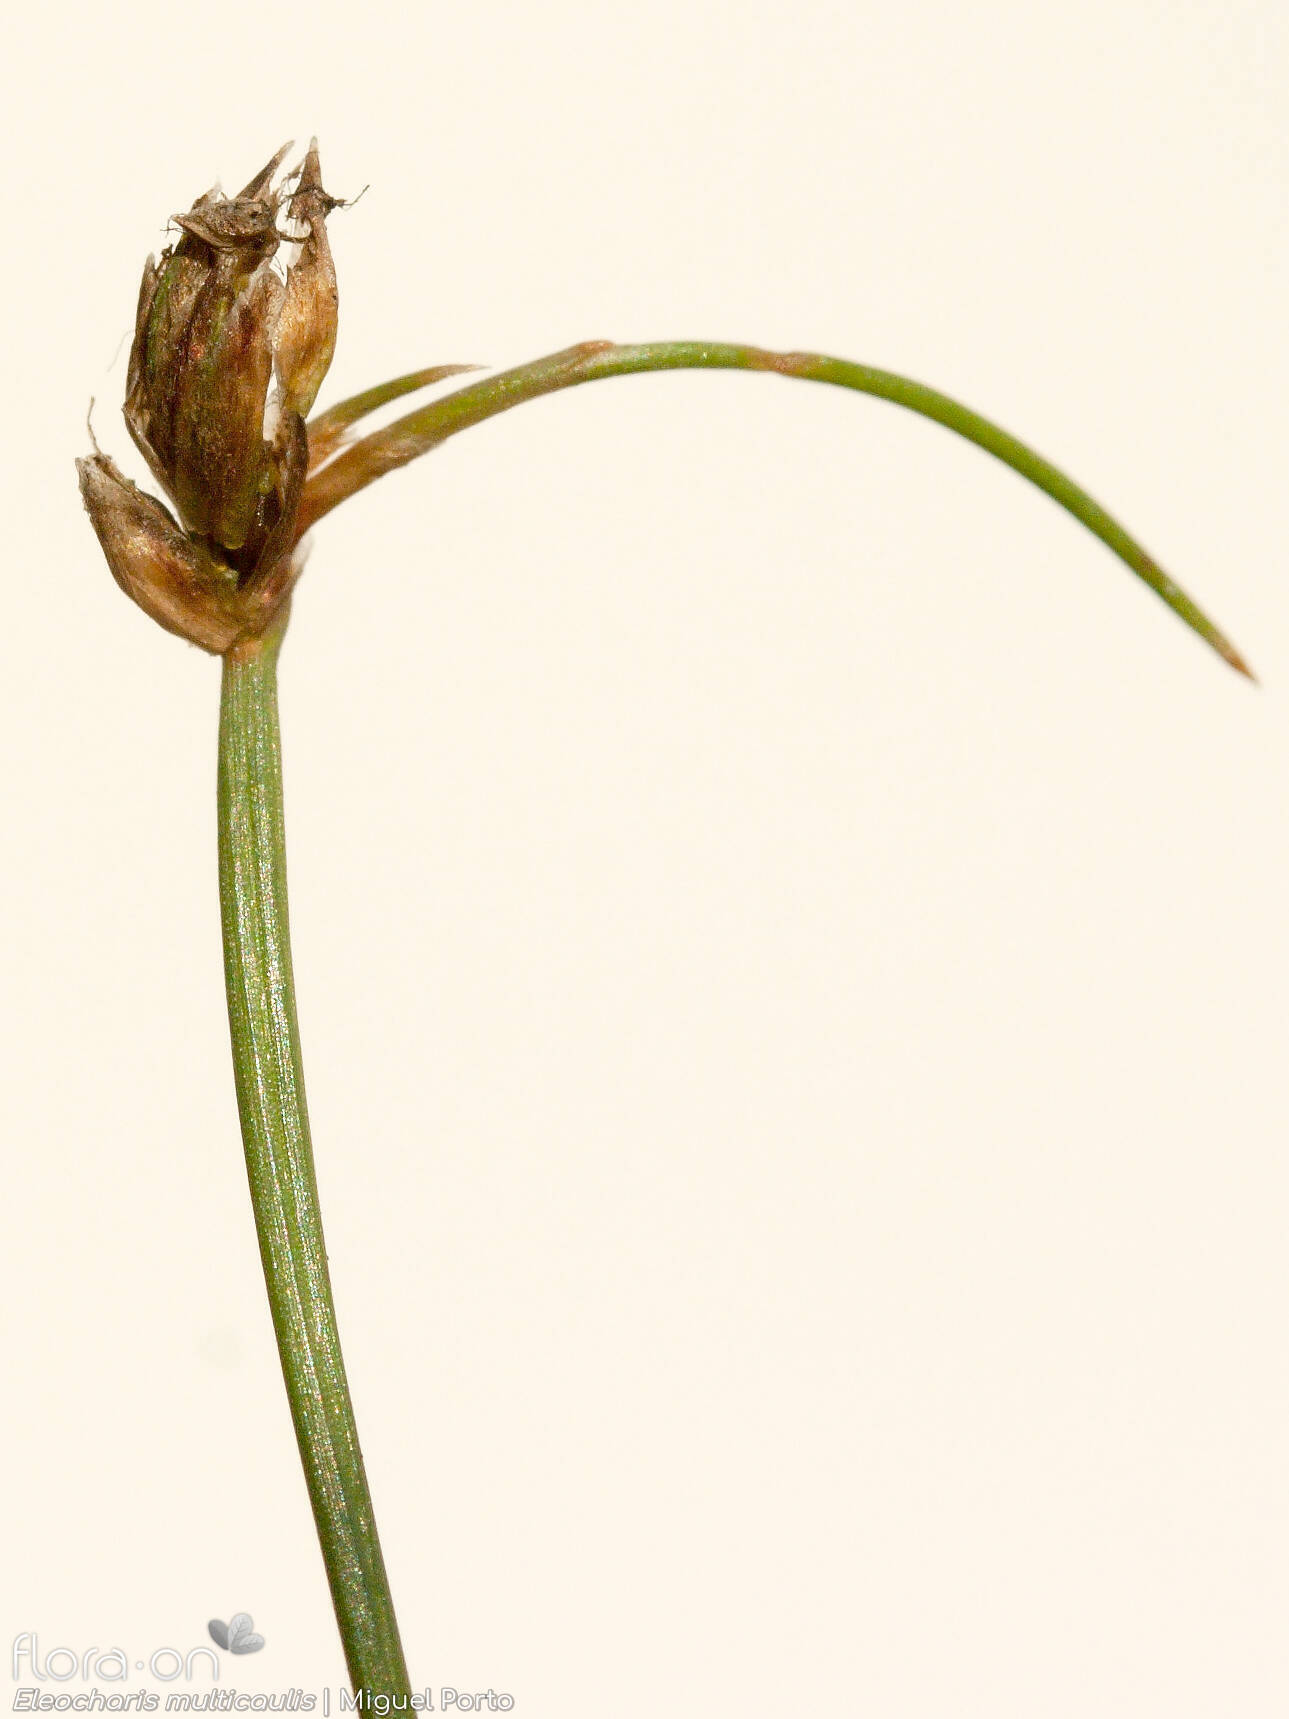 Eleocharis multicaulis - Flor (geral) | Miguel Porto; CC BY-NC 4.0